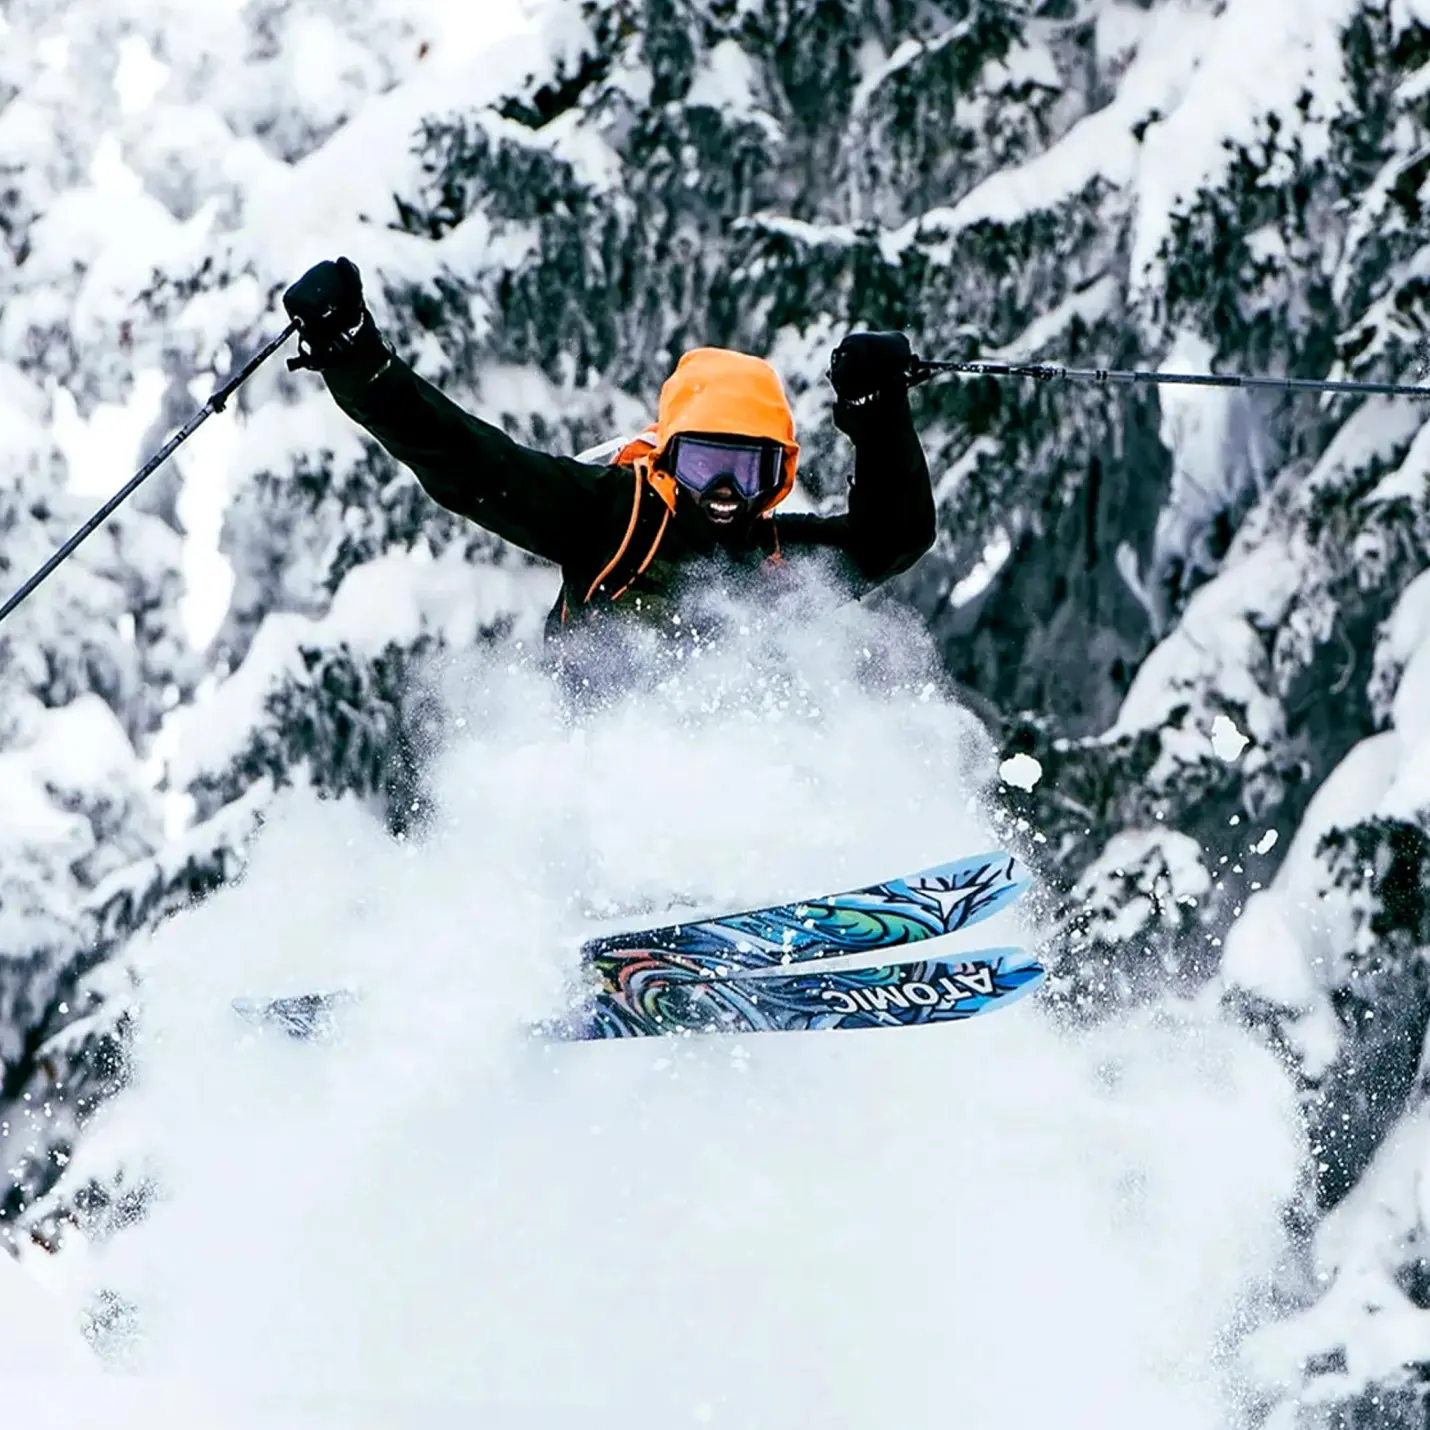 dragon nfx ski